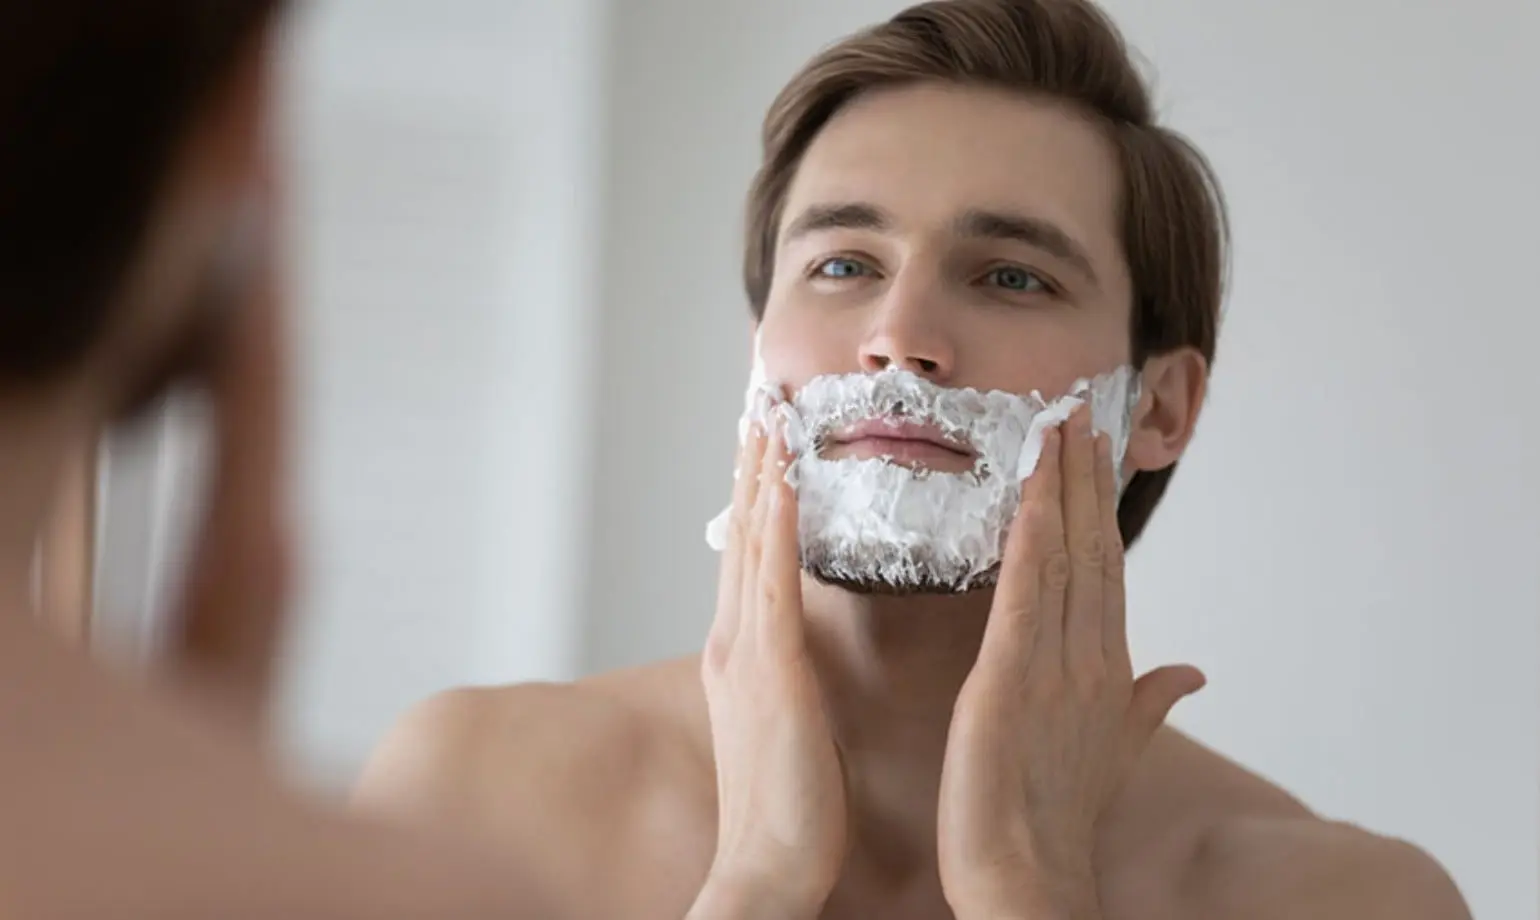 Maintenir une barbe courte avec un rasage et une coupe appropriés